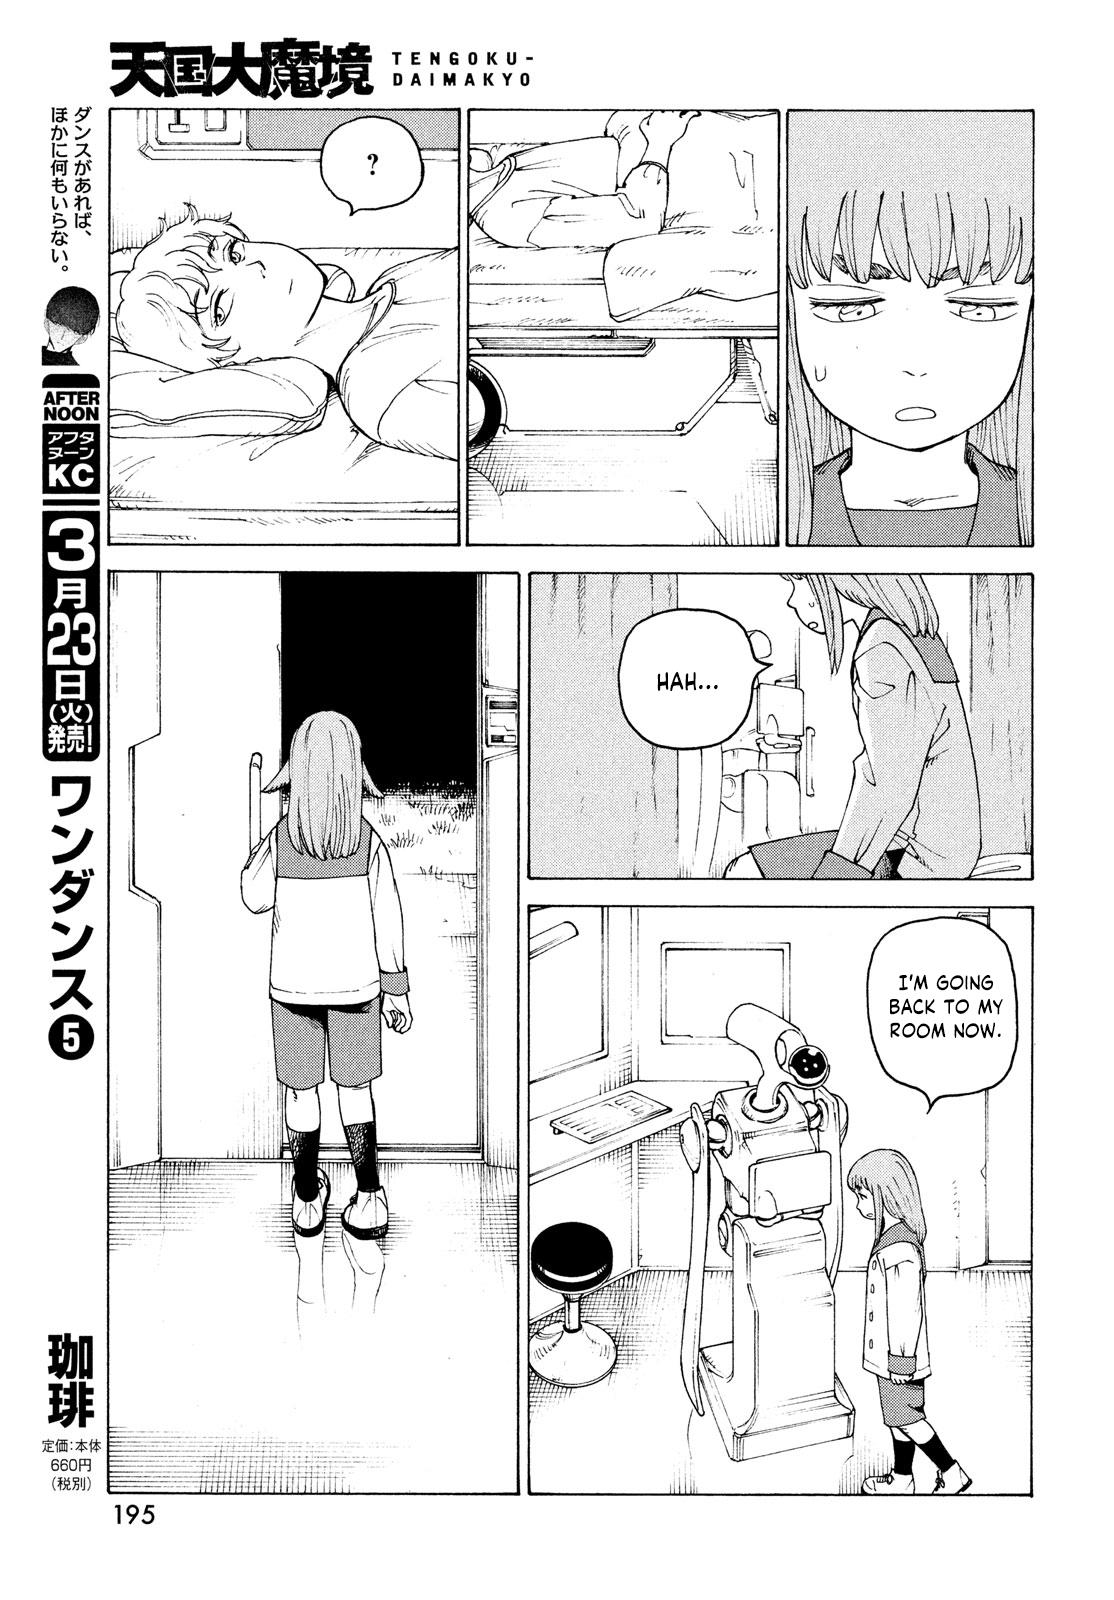 Tengoku Daimakyou Chapter 34: Inazaki Robin ➂ page 11 - Mangakakalot